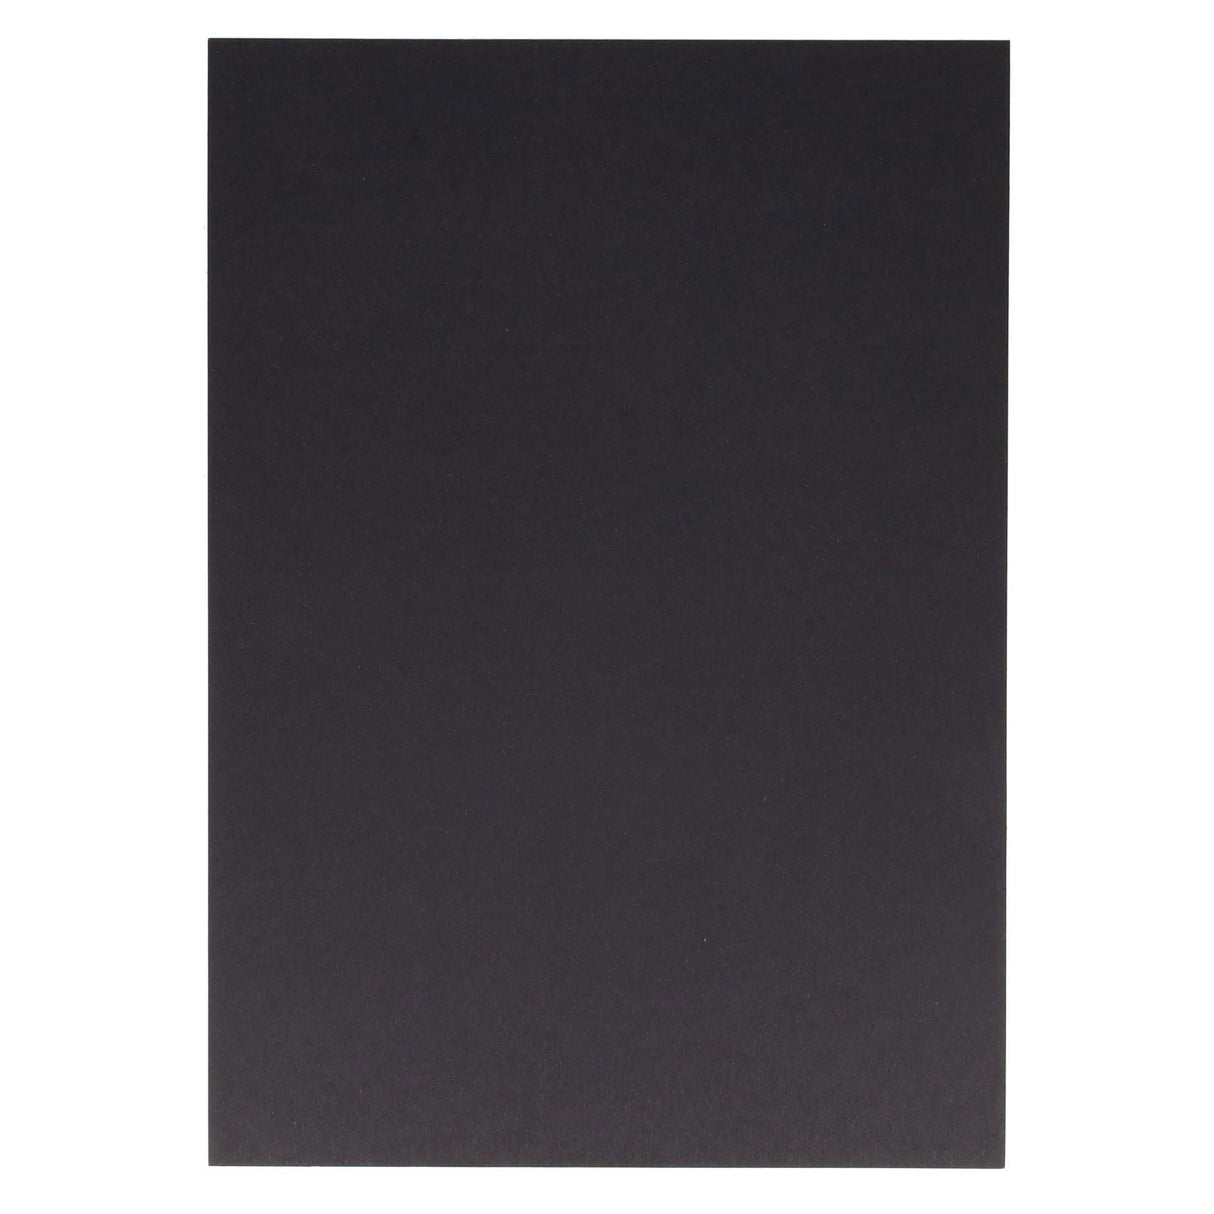 Premier Activity A4 Card - 160 gsm - Black - 100 Sheets-Craft Paper & Card-Premier|StationeryShop.co.uk